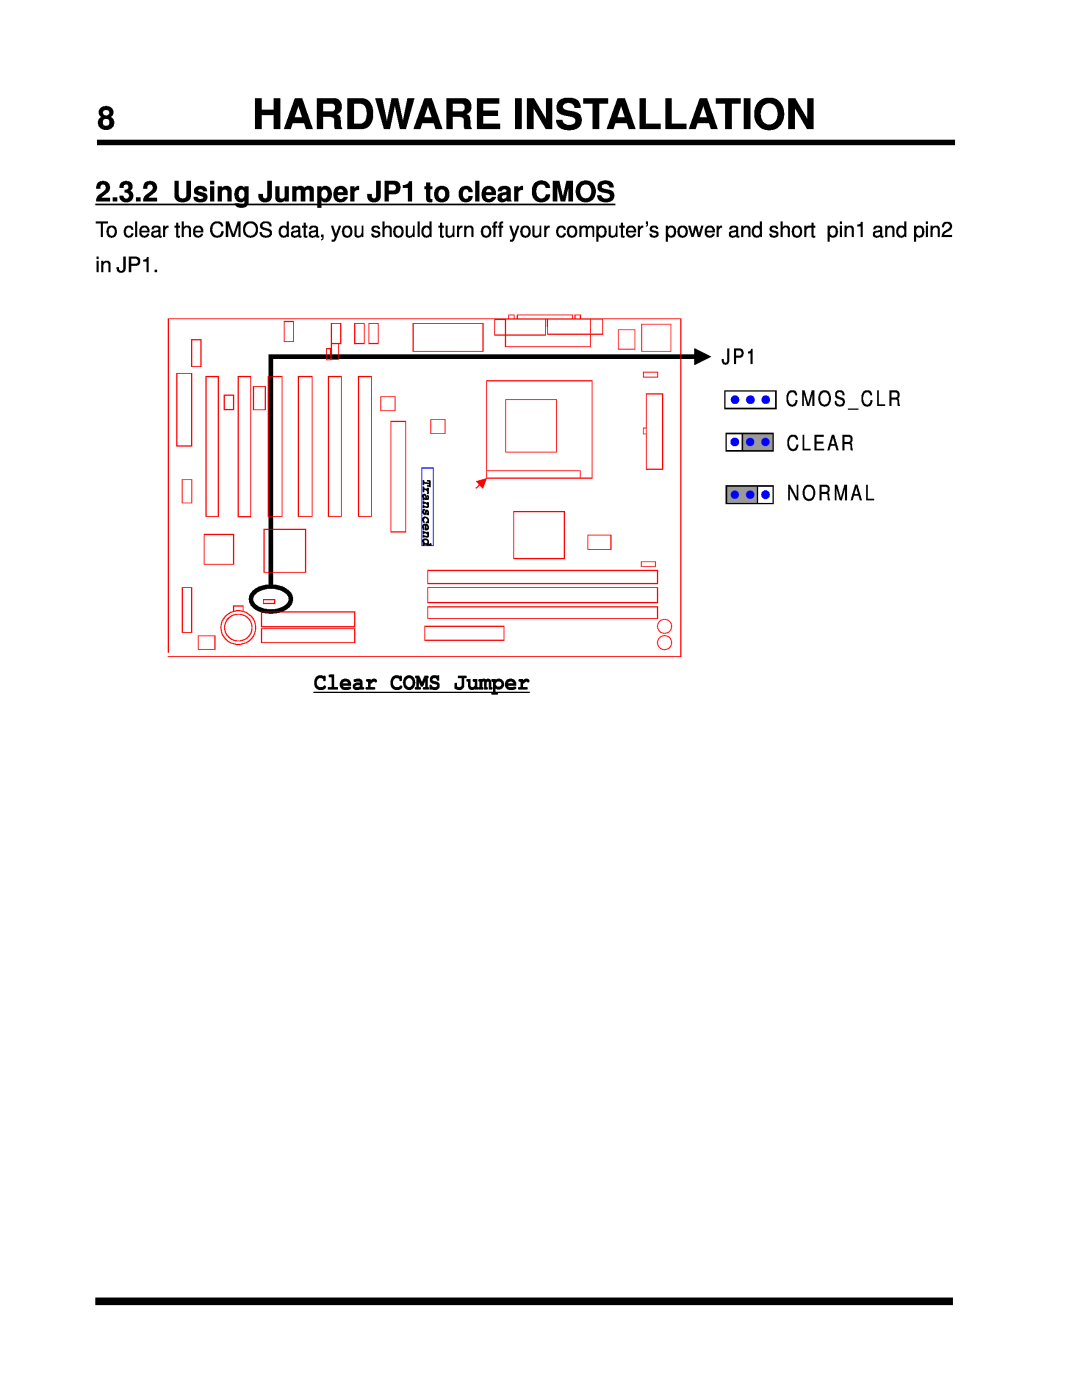 Intel TS-ASP3 8HARDWARE INSTALLATION, Using Jumper JP1 to clear CMOS, Clear COMS Jumper, C M O S _ C L R, Transcend 